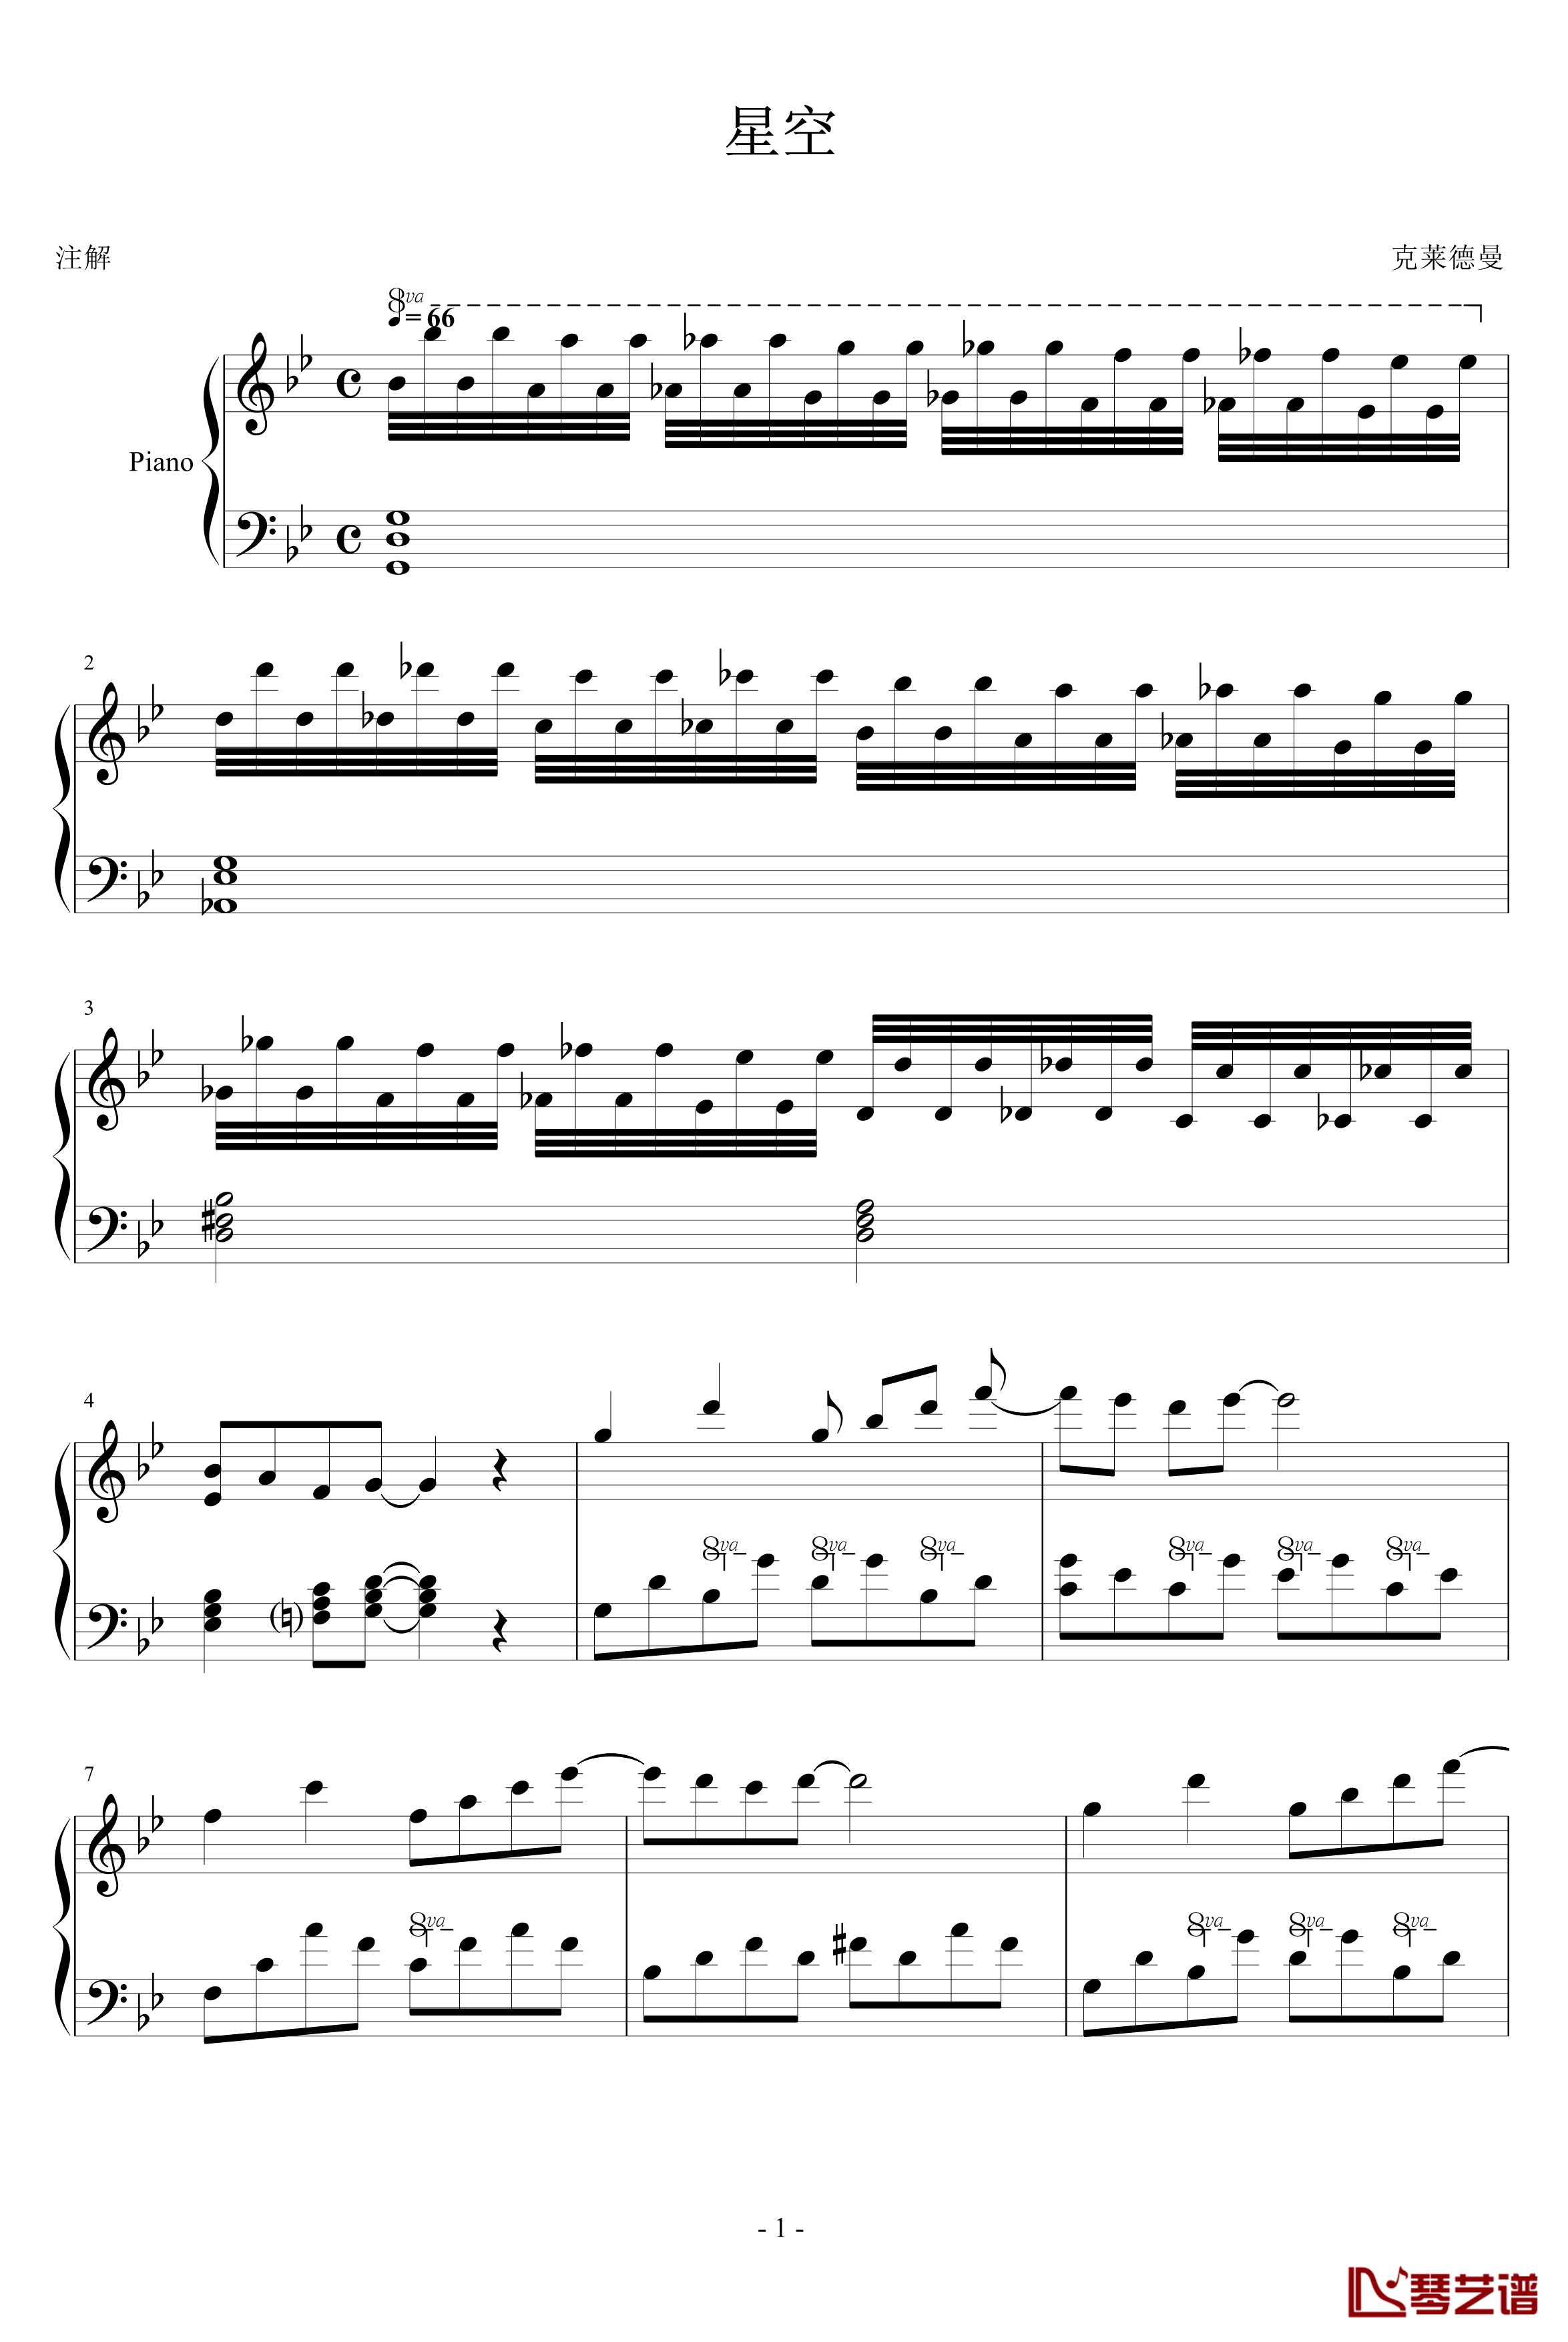 星空钢琴谱-简化版-克莱德曼1